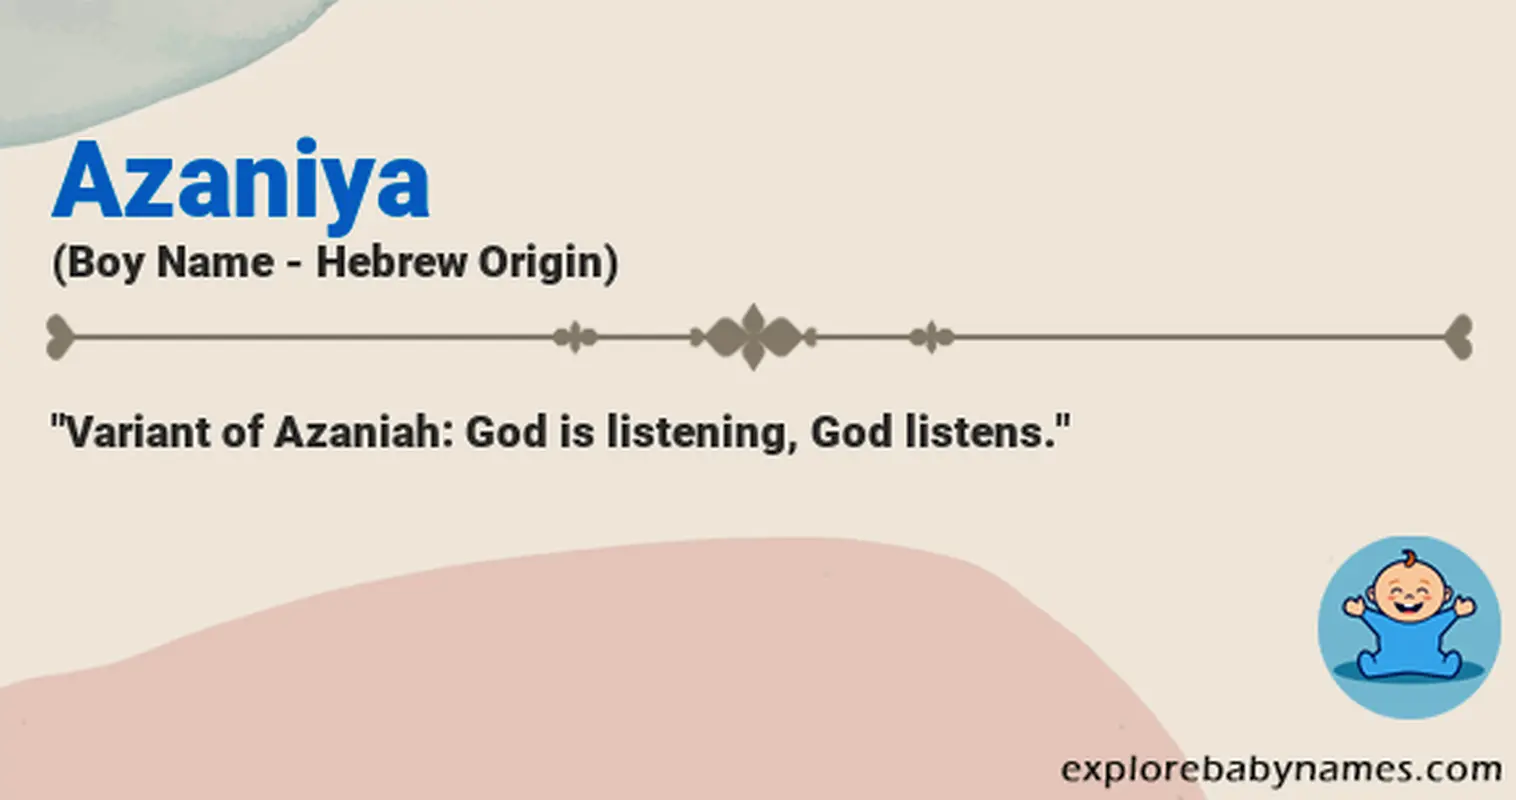 Meaning of Azaniya